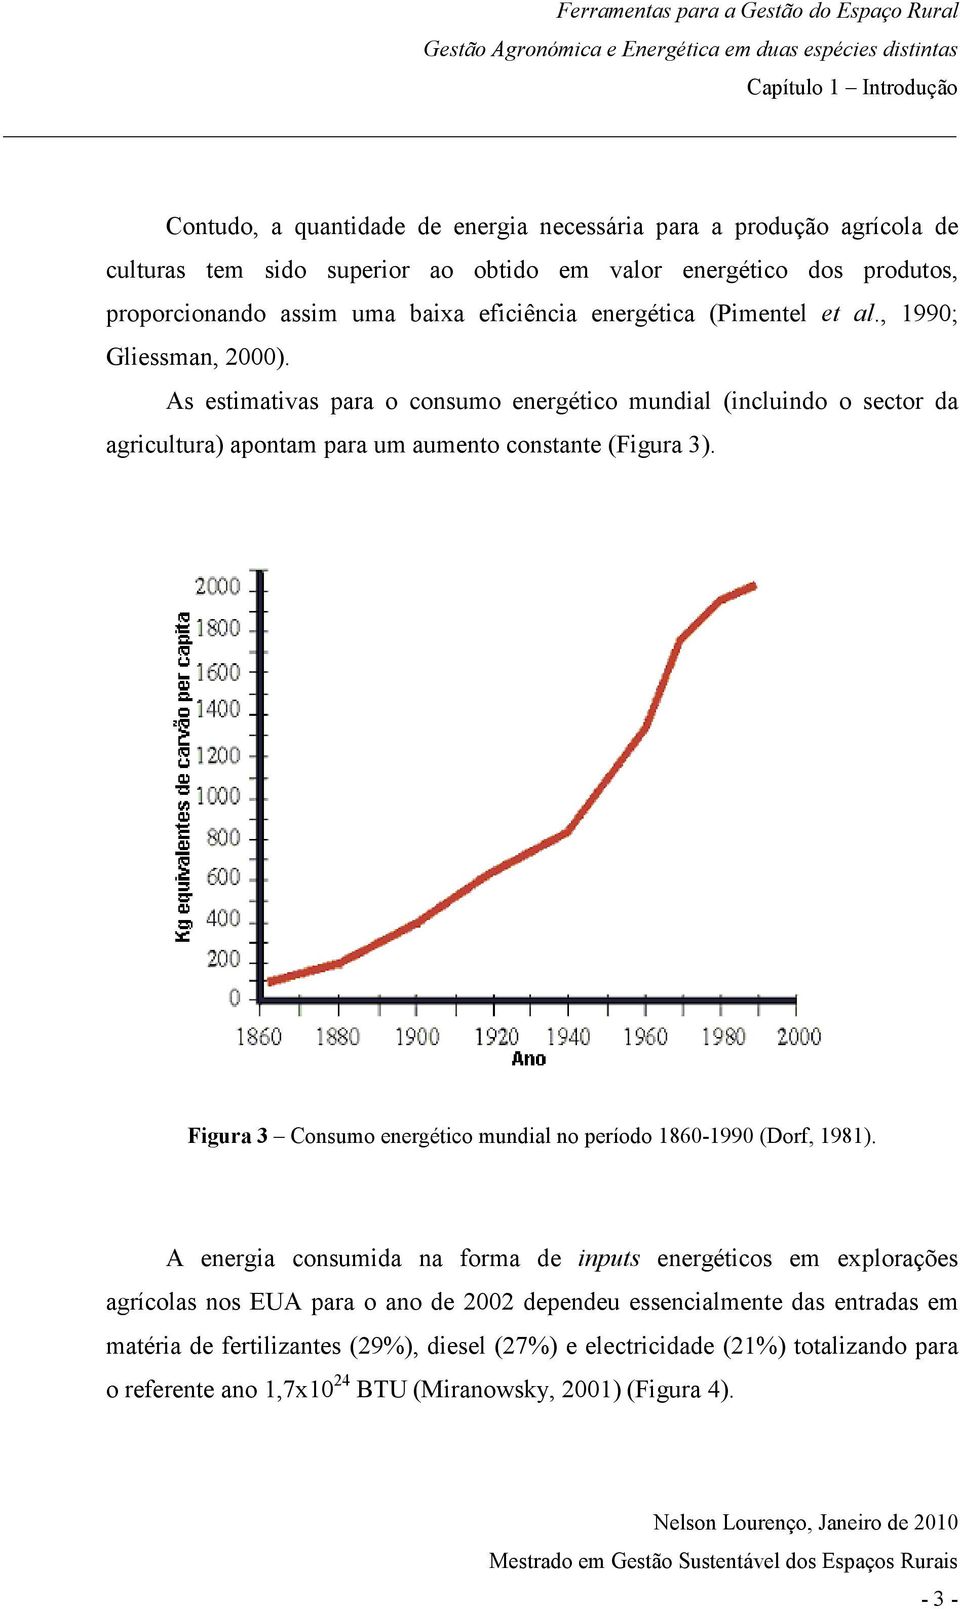 As estimativas para o consumo energético mundial (incluindo o sector da agricultura) apontam para um aumento constante (Figura 3).